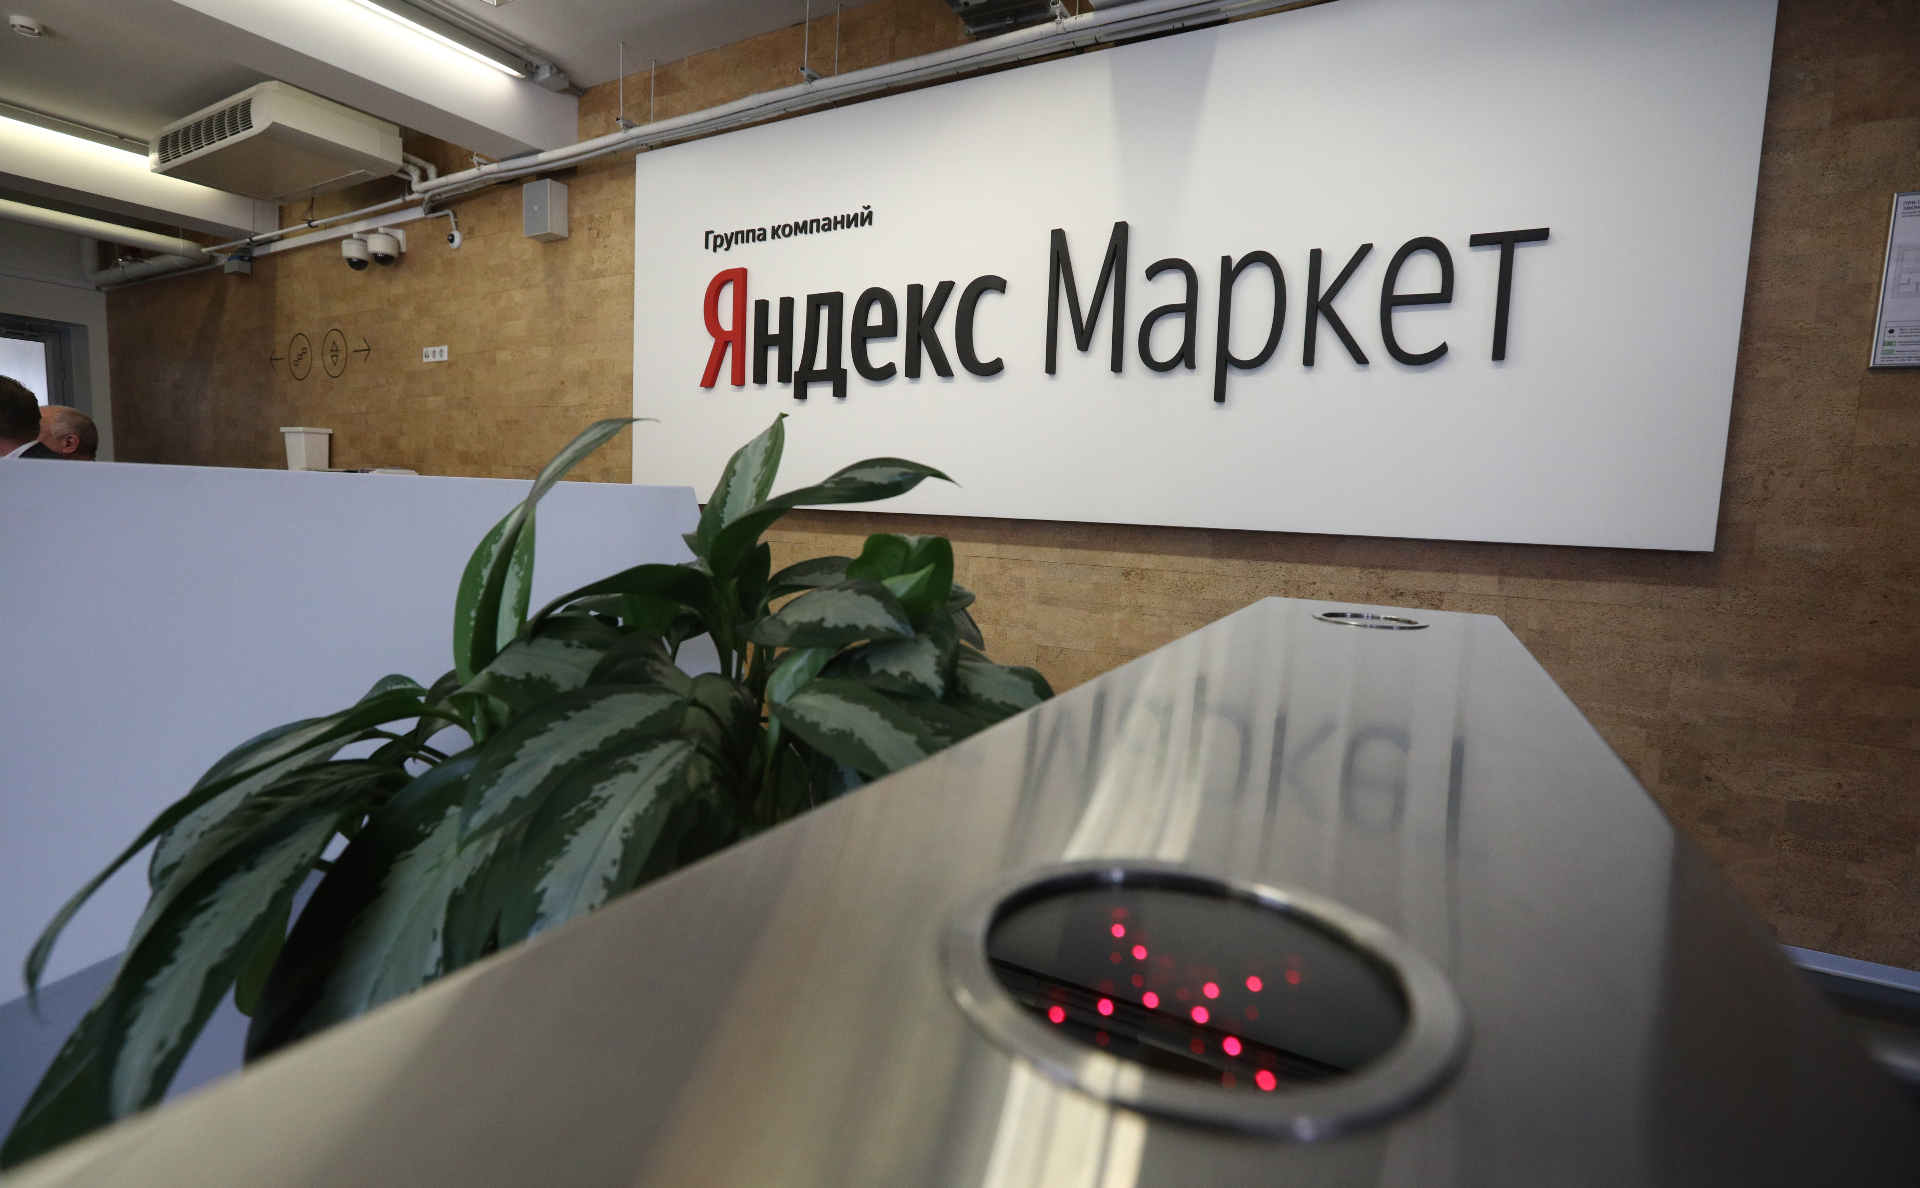 Яндекс Маркет Интернет Магазин Т